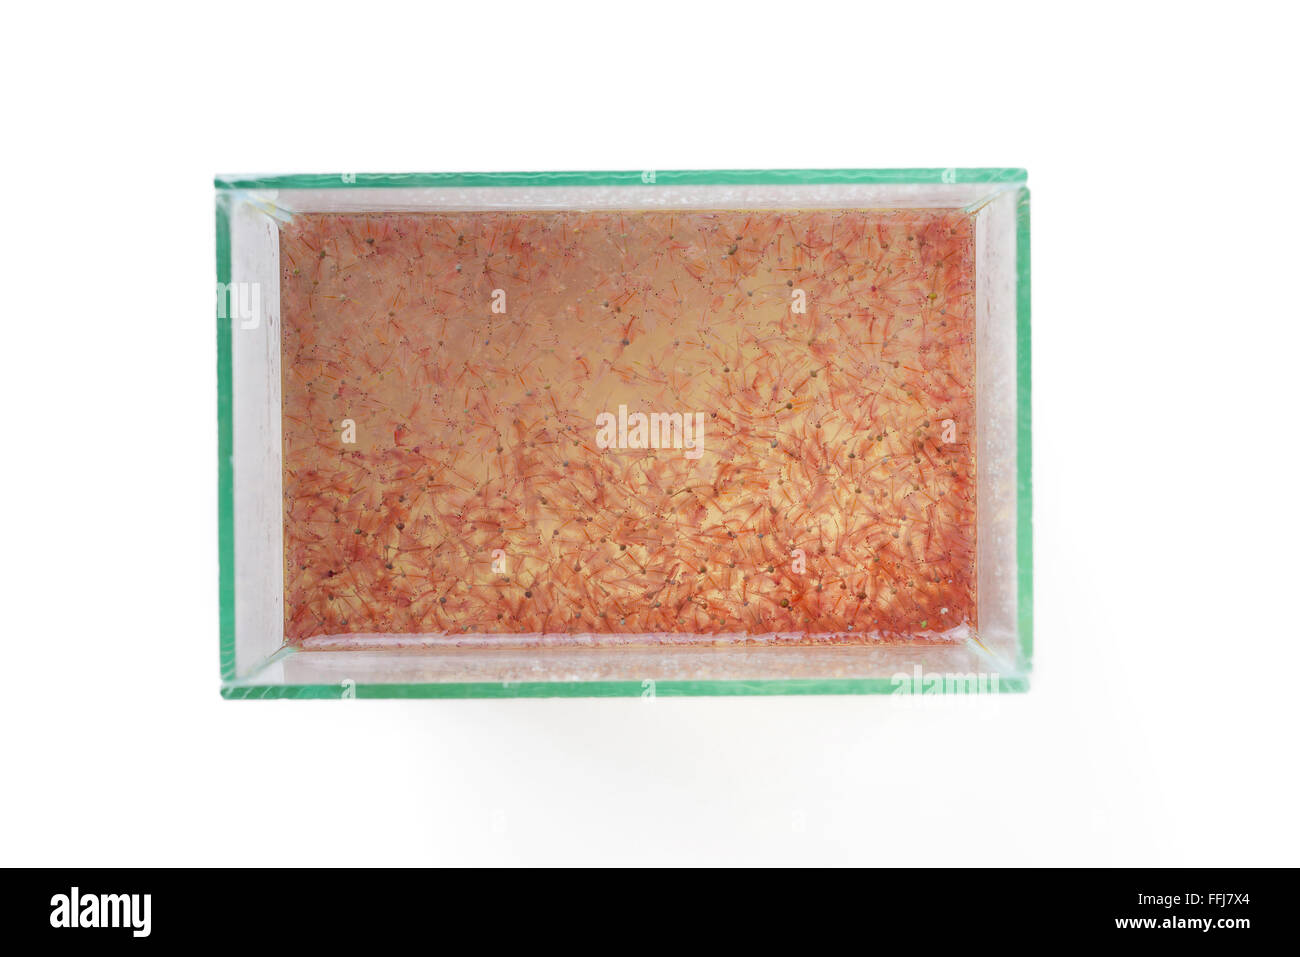 Vista superior de la artemia plancton en el tanque de vidrio Foto de stock